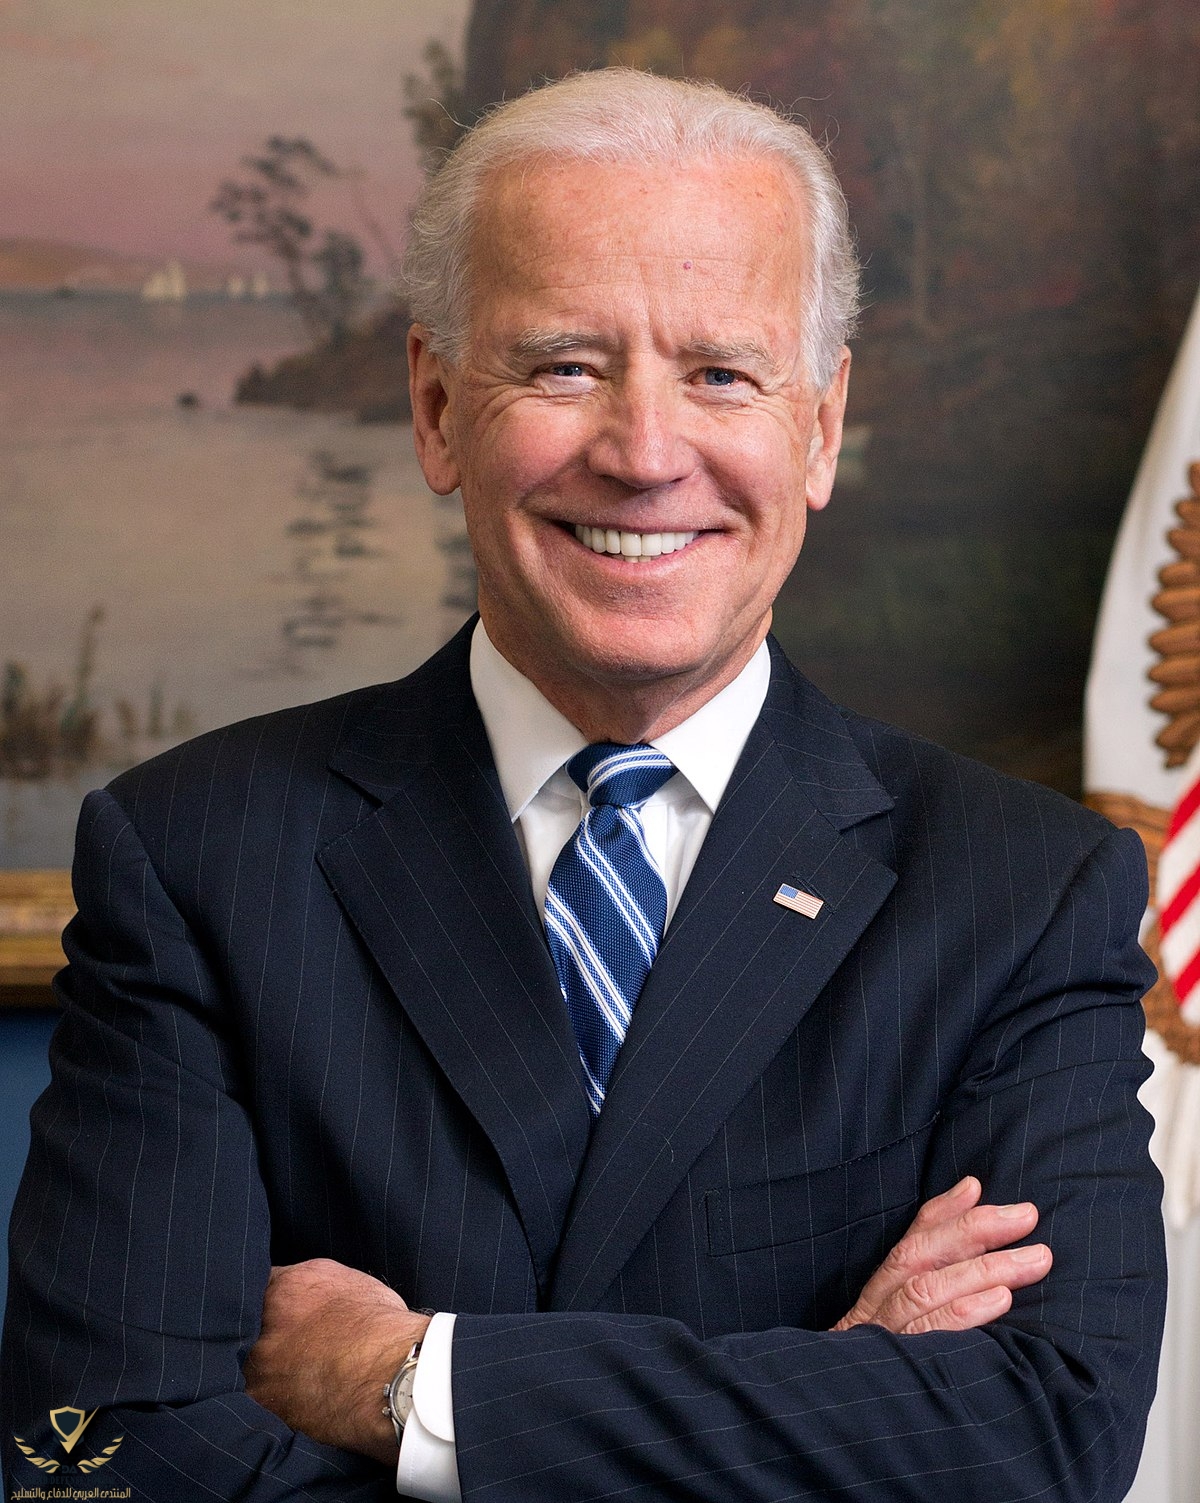 1200px-Joe_Biden_official_portrait_2013_cropped.jpg